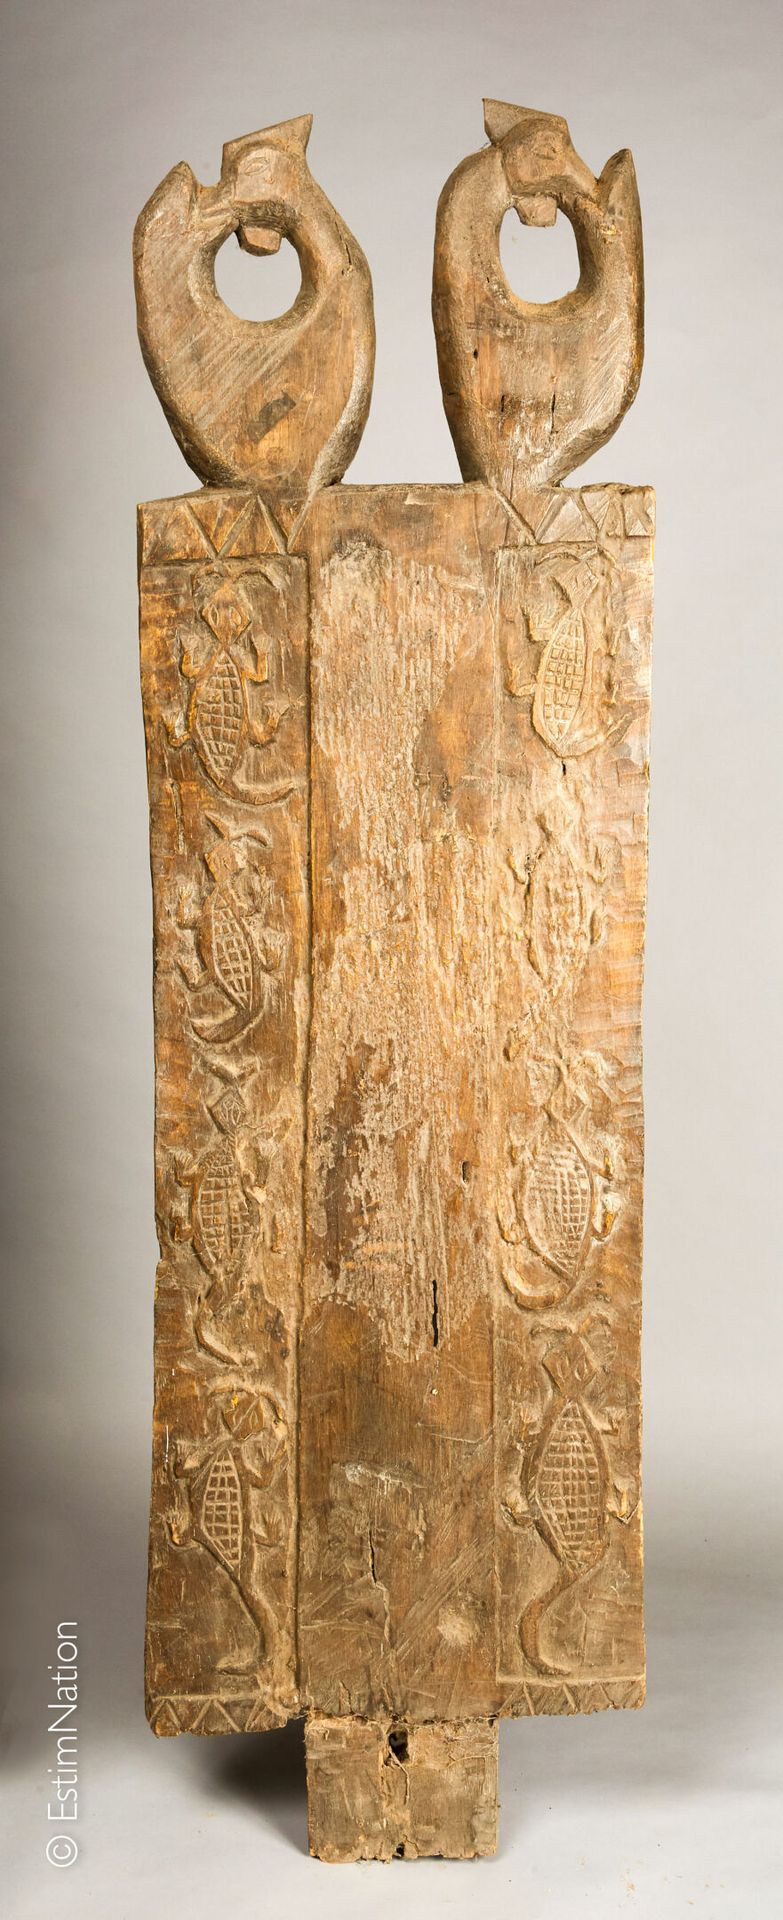 TIMOR 钛合金



雕刻的木门，上部装饰有两只被驯养的五爪金龙和浮雕的鳄鱼图案的门楣



高度：169厘米 - 宽度：45.5厘米

(磨损和虫洞) 
&hellip;